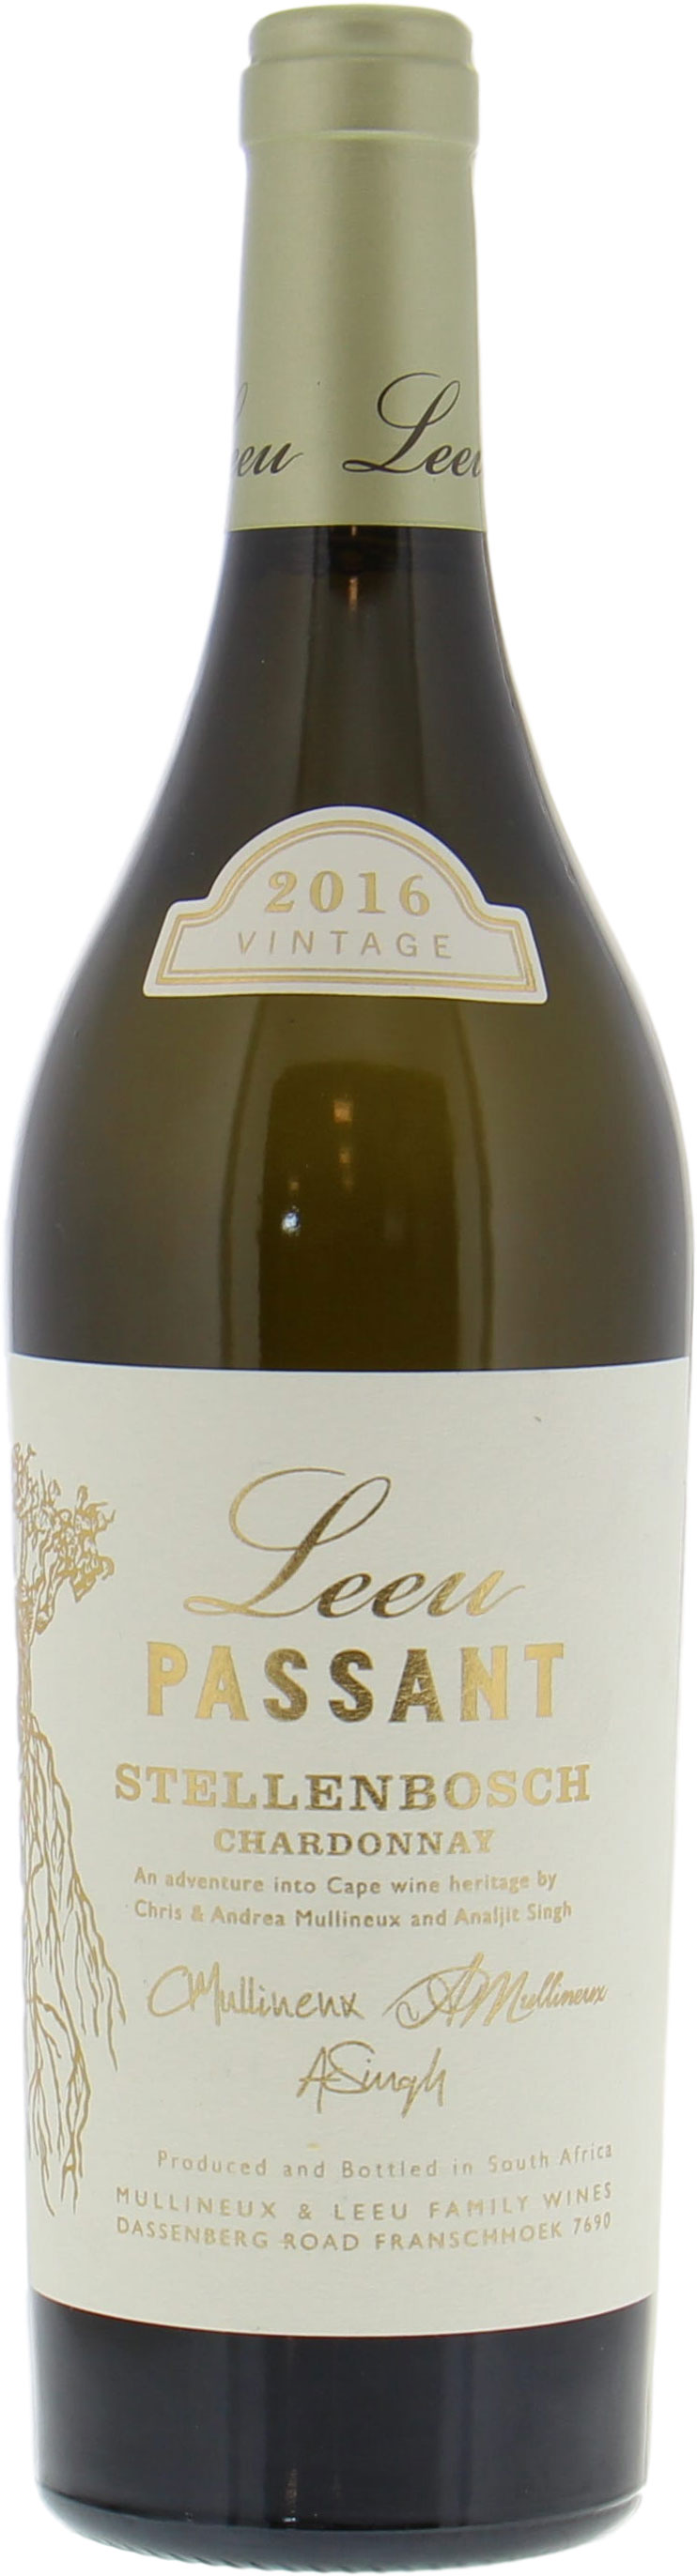 Mullineux  - Leeu Passant Chardonnay 2016 Perfect